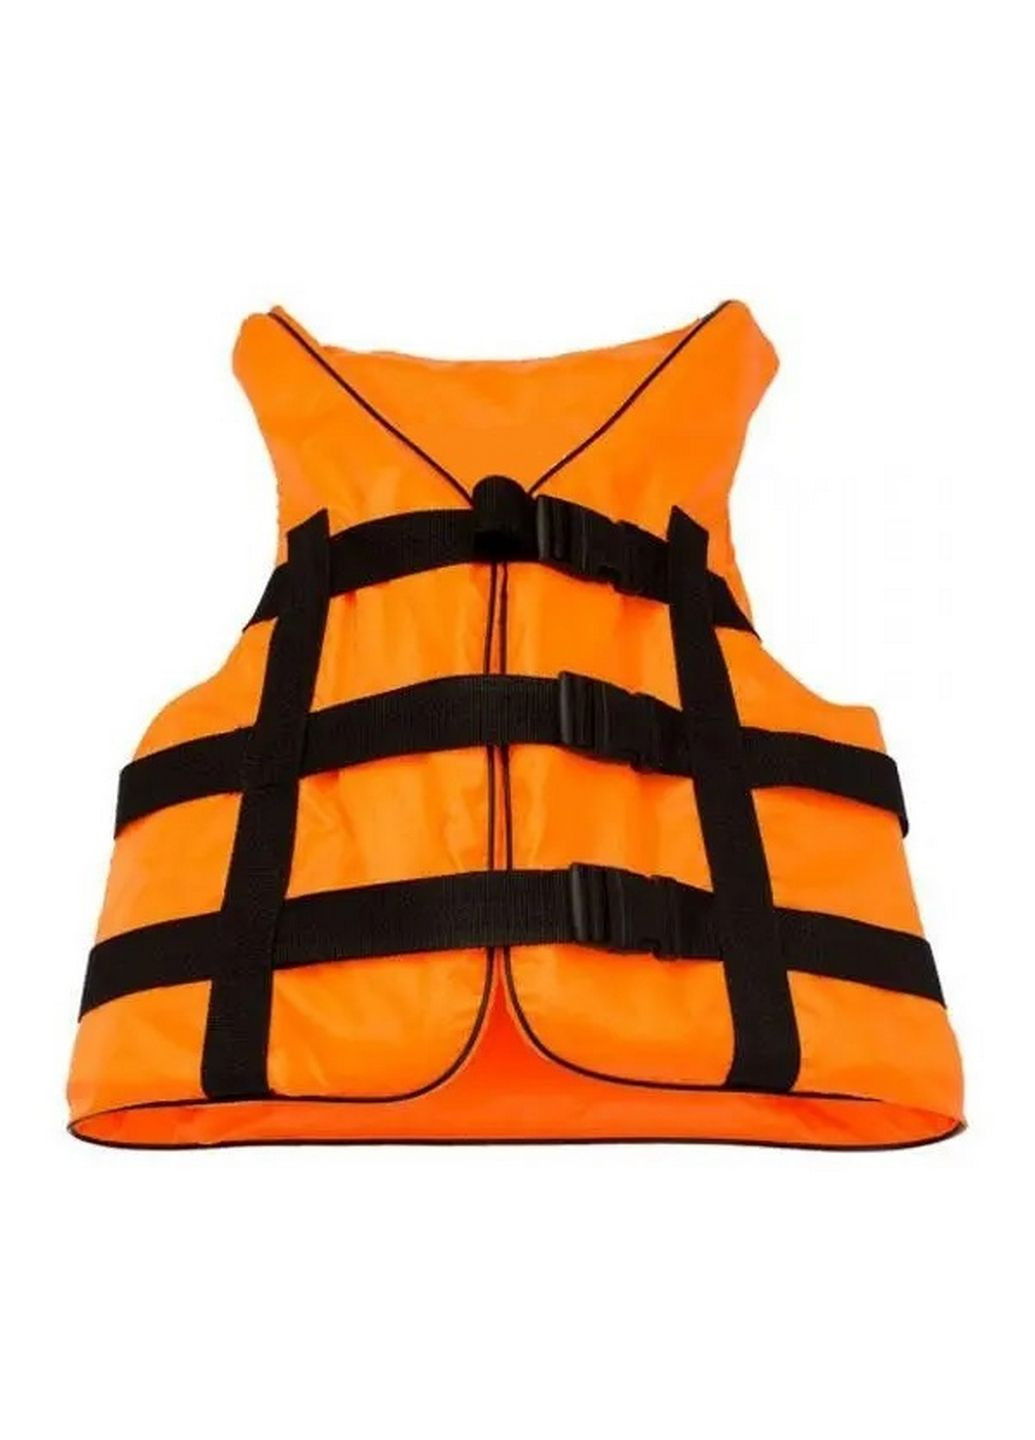 Спасательный жилет оранж 110-130 кг Ranger (292577300)